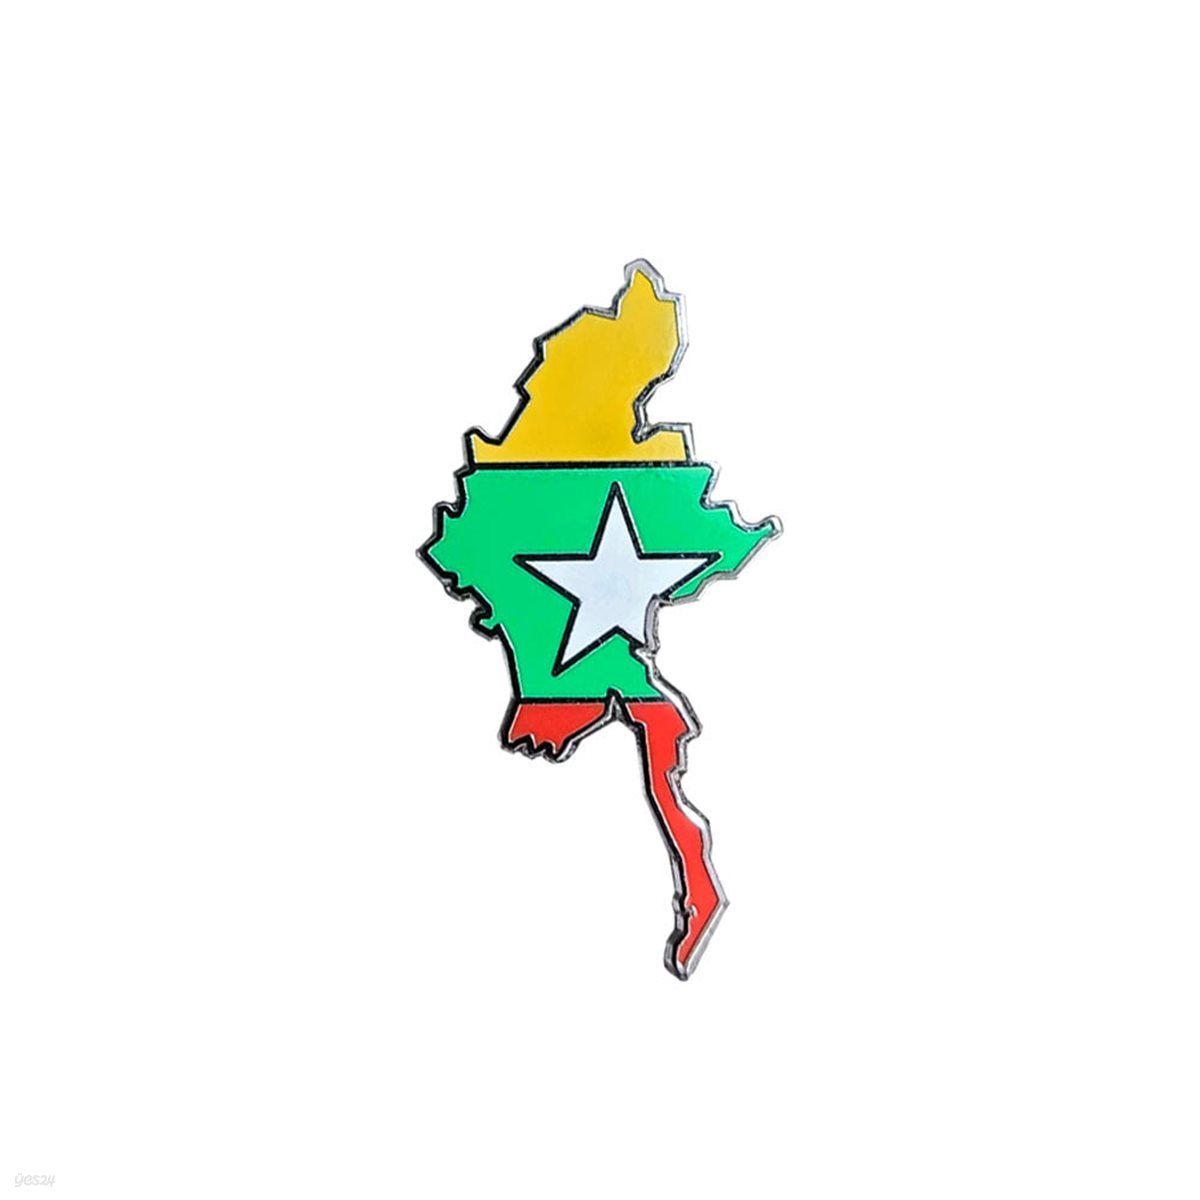 미얀마 지도 뱃지